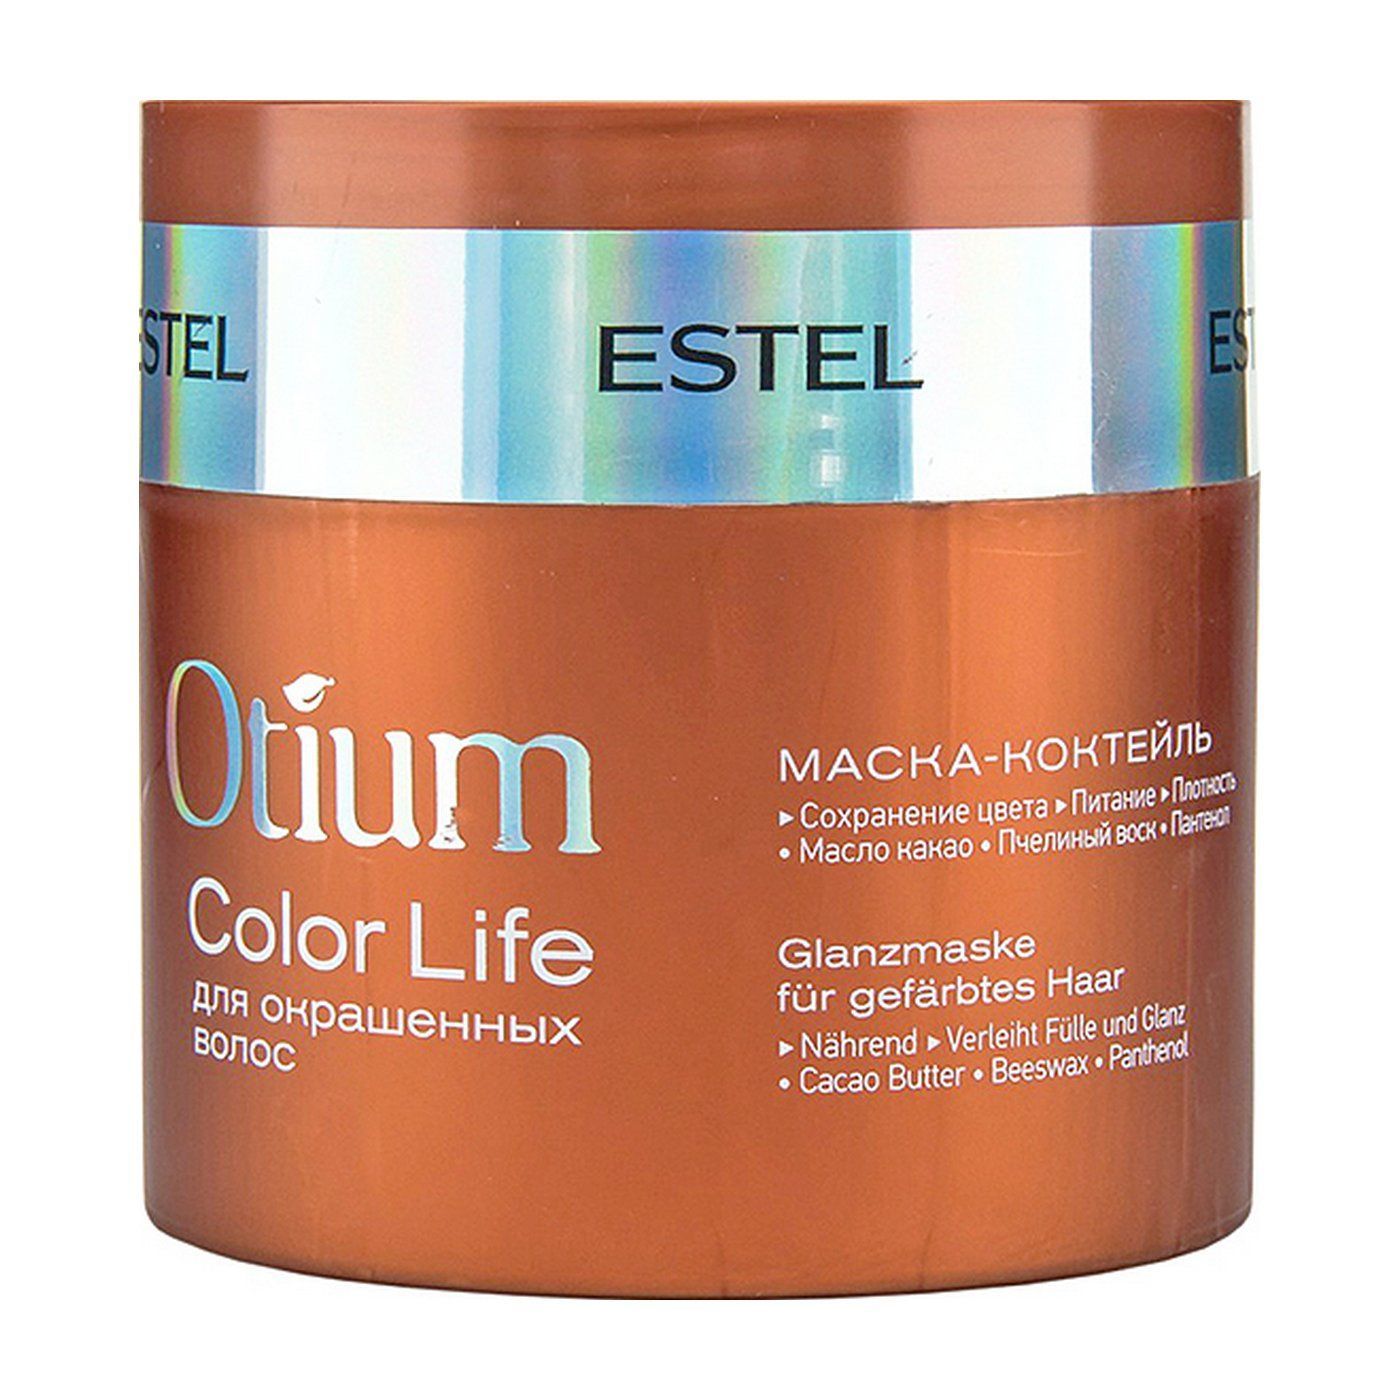 Увлажняющие маски для окрашенных волос. Estel Otium Color Life маска. Маска-коктейль для окрашенных волос Otium Color Life, 300 мл. Estel/ маска-коктейль для окрашенных волос Otium Color Life (300 мл). Маска Эстель отиум для окрашенных волос.